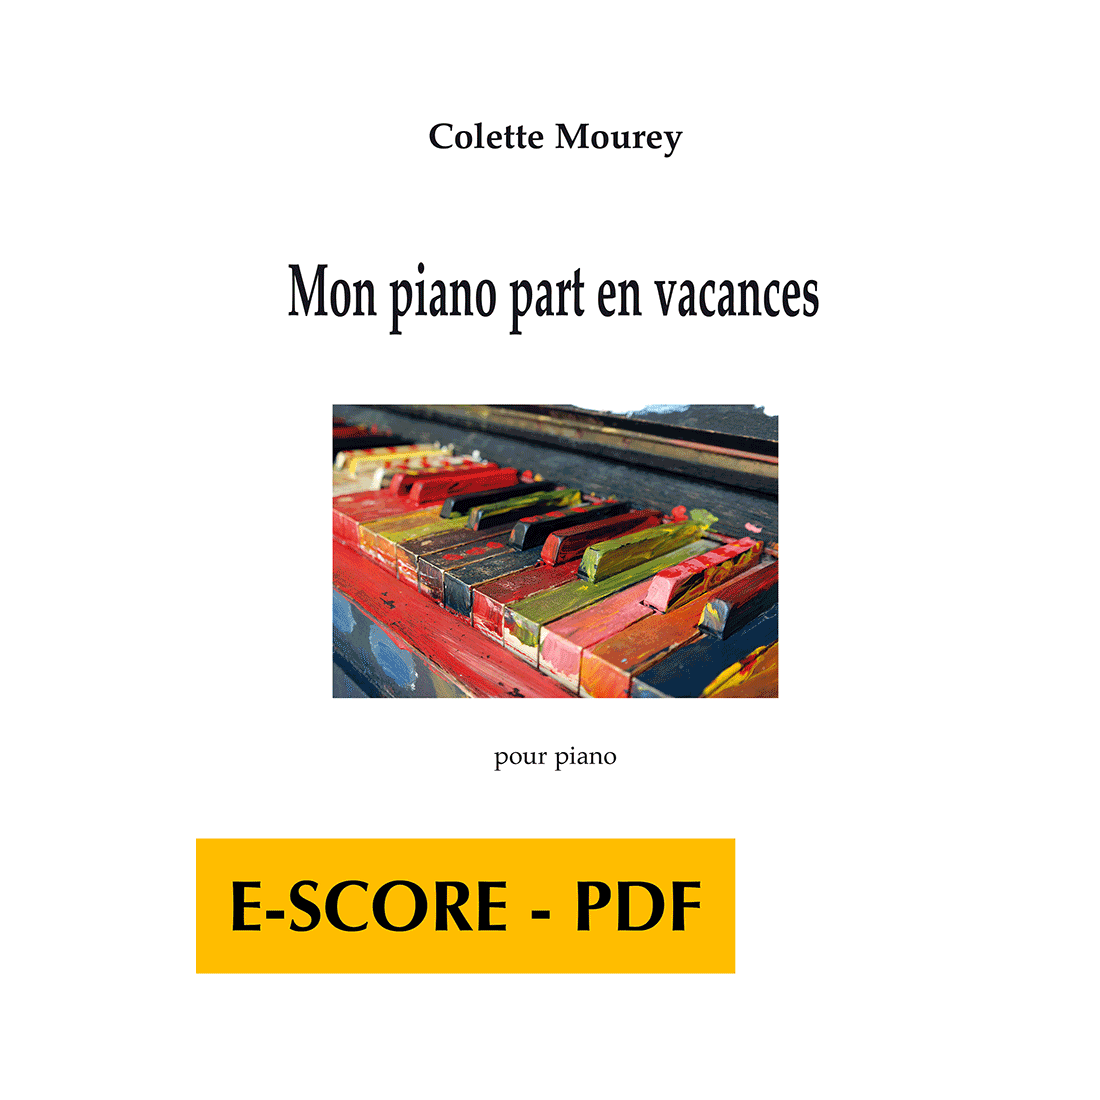 Mon piano part en vacances pour piano - E-score PDF